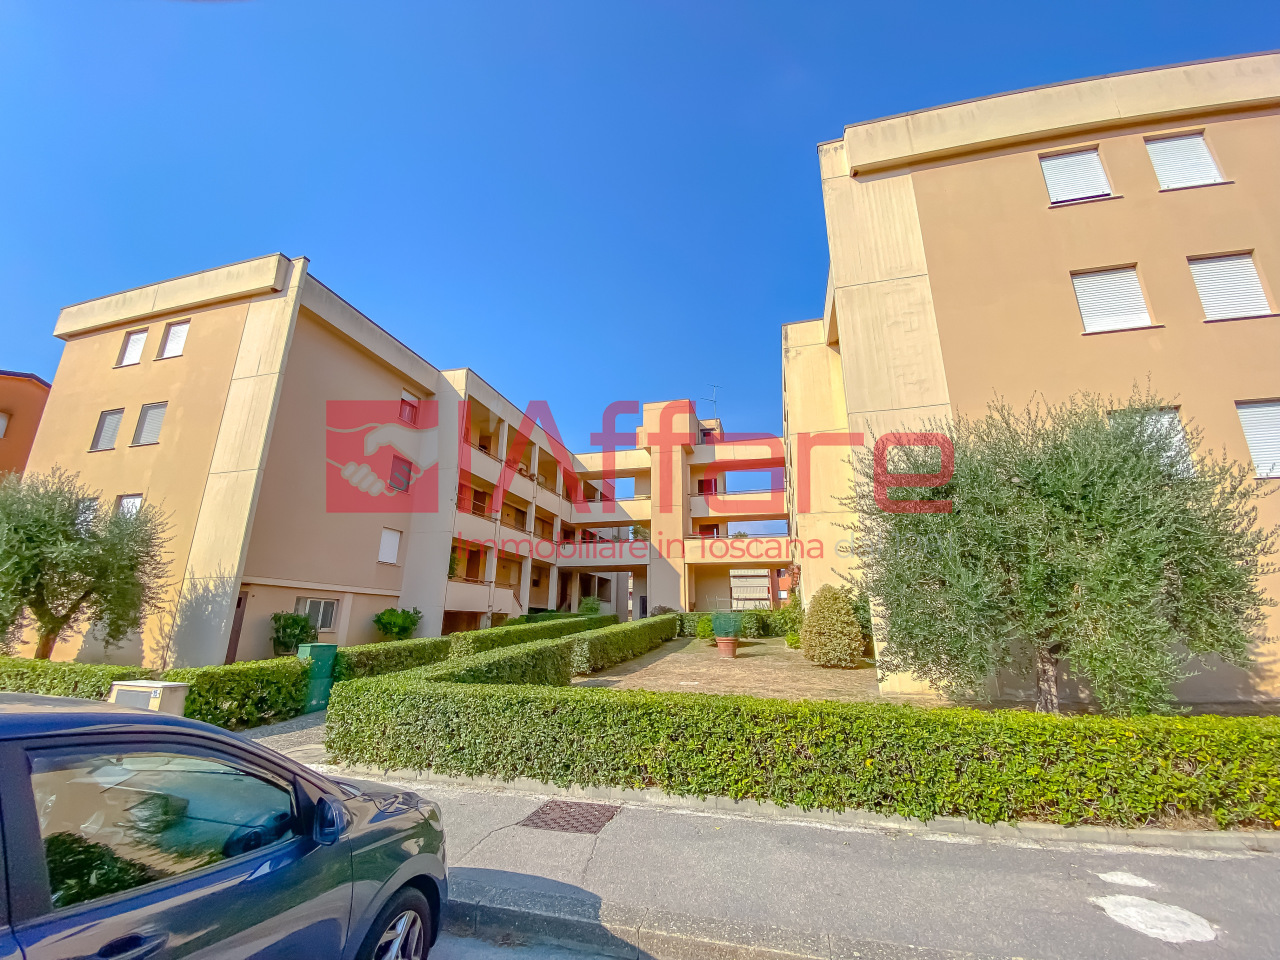 Appartamento in vendita a Pieve a Nievole, 5 locali, prezzo € 135.000 | PortaleAgenzieImmobiliari.it